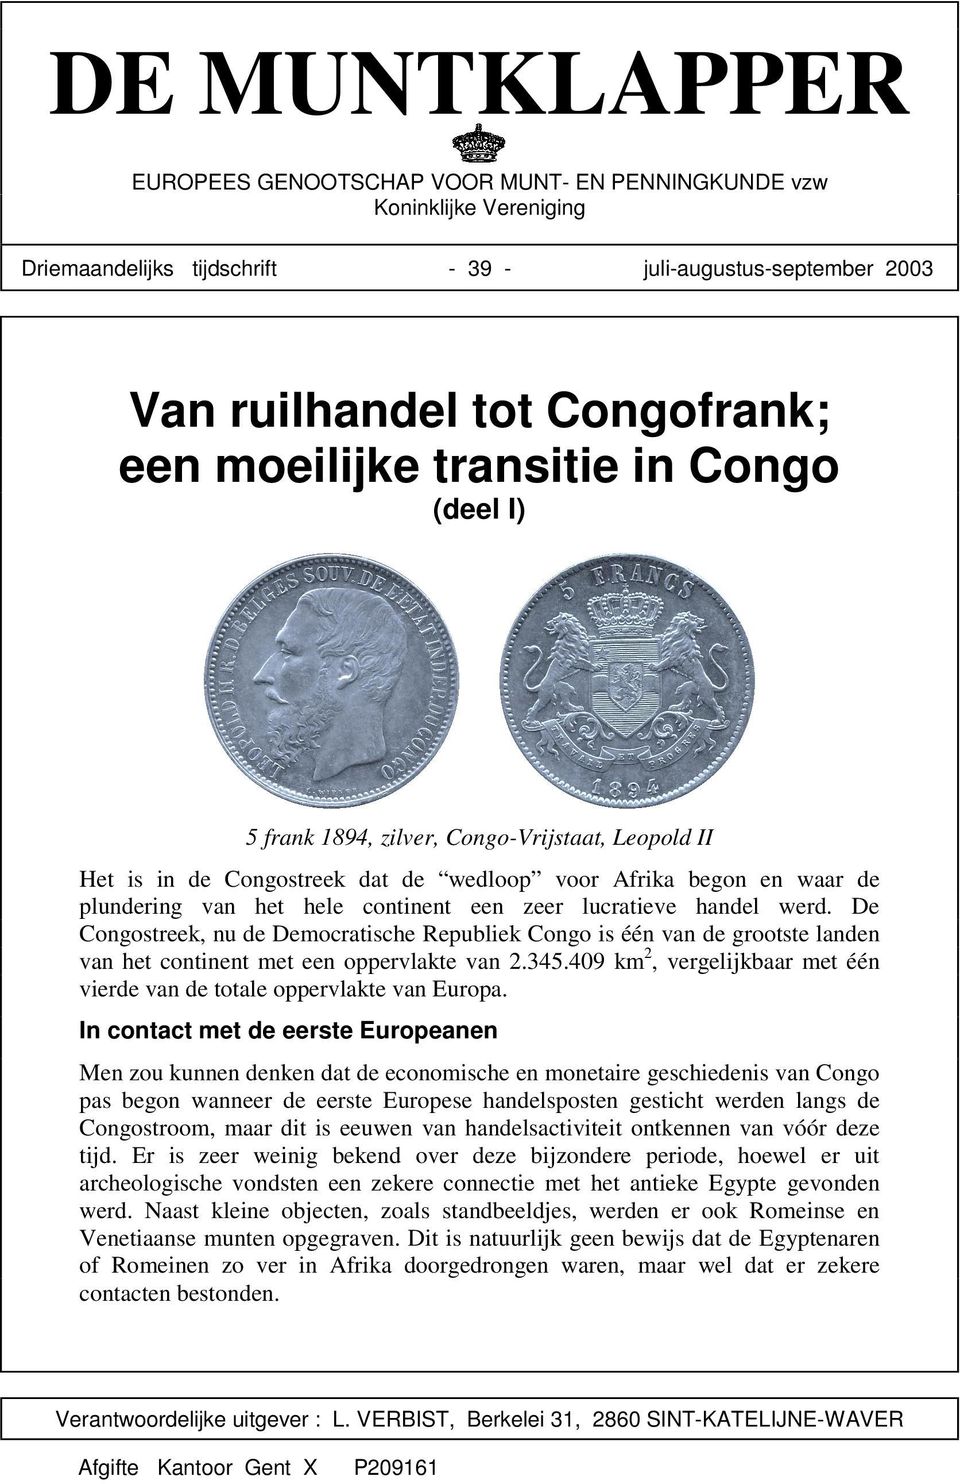 lucratieve handel werd. De Congostreek, nu de Democratische Republiek Congo is één van de grootste landen van het continent met een oppervlakte van 2.345.